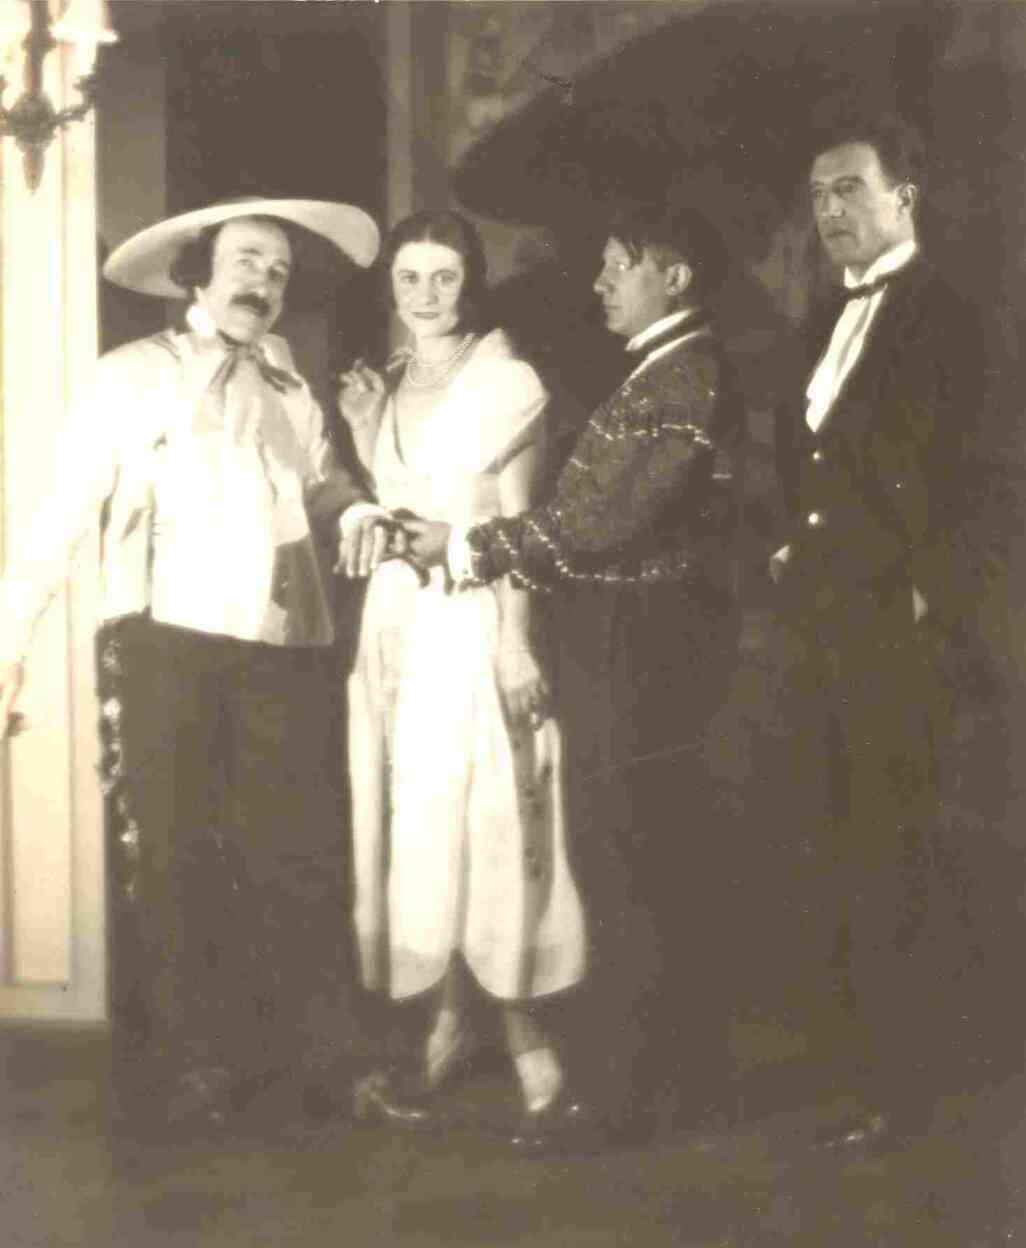 « Eugenia Errazuriz, riche mécène chilienne, organisa la rencontre entre Olga, Picasso, et le comte de Beaumont, bien connu pour l’organisation de réceptions fastueuses, qu’affectionnait Olga, comme ce bal de 1924, organisé dans son hôtel de la rue Masseran à Paris. »